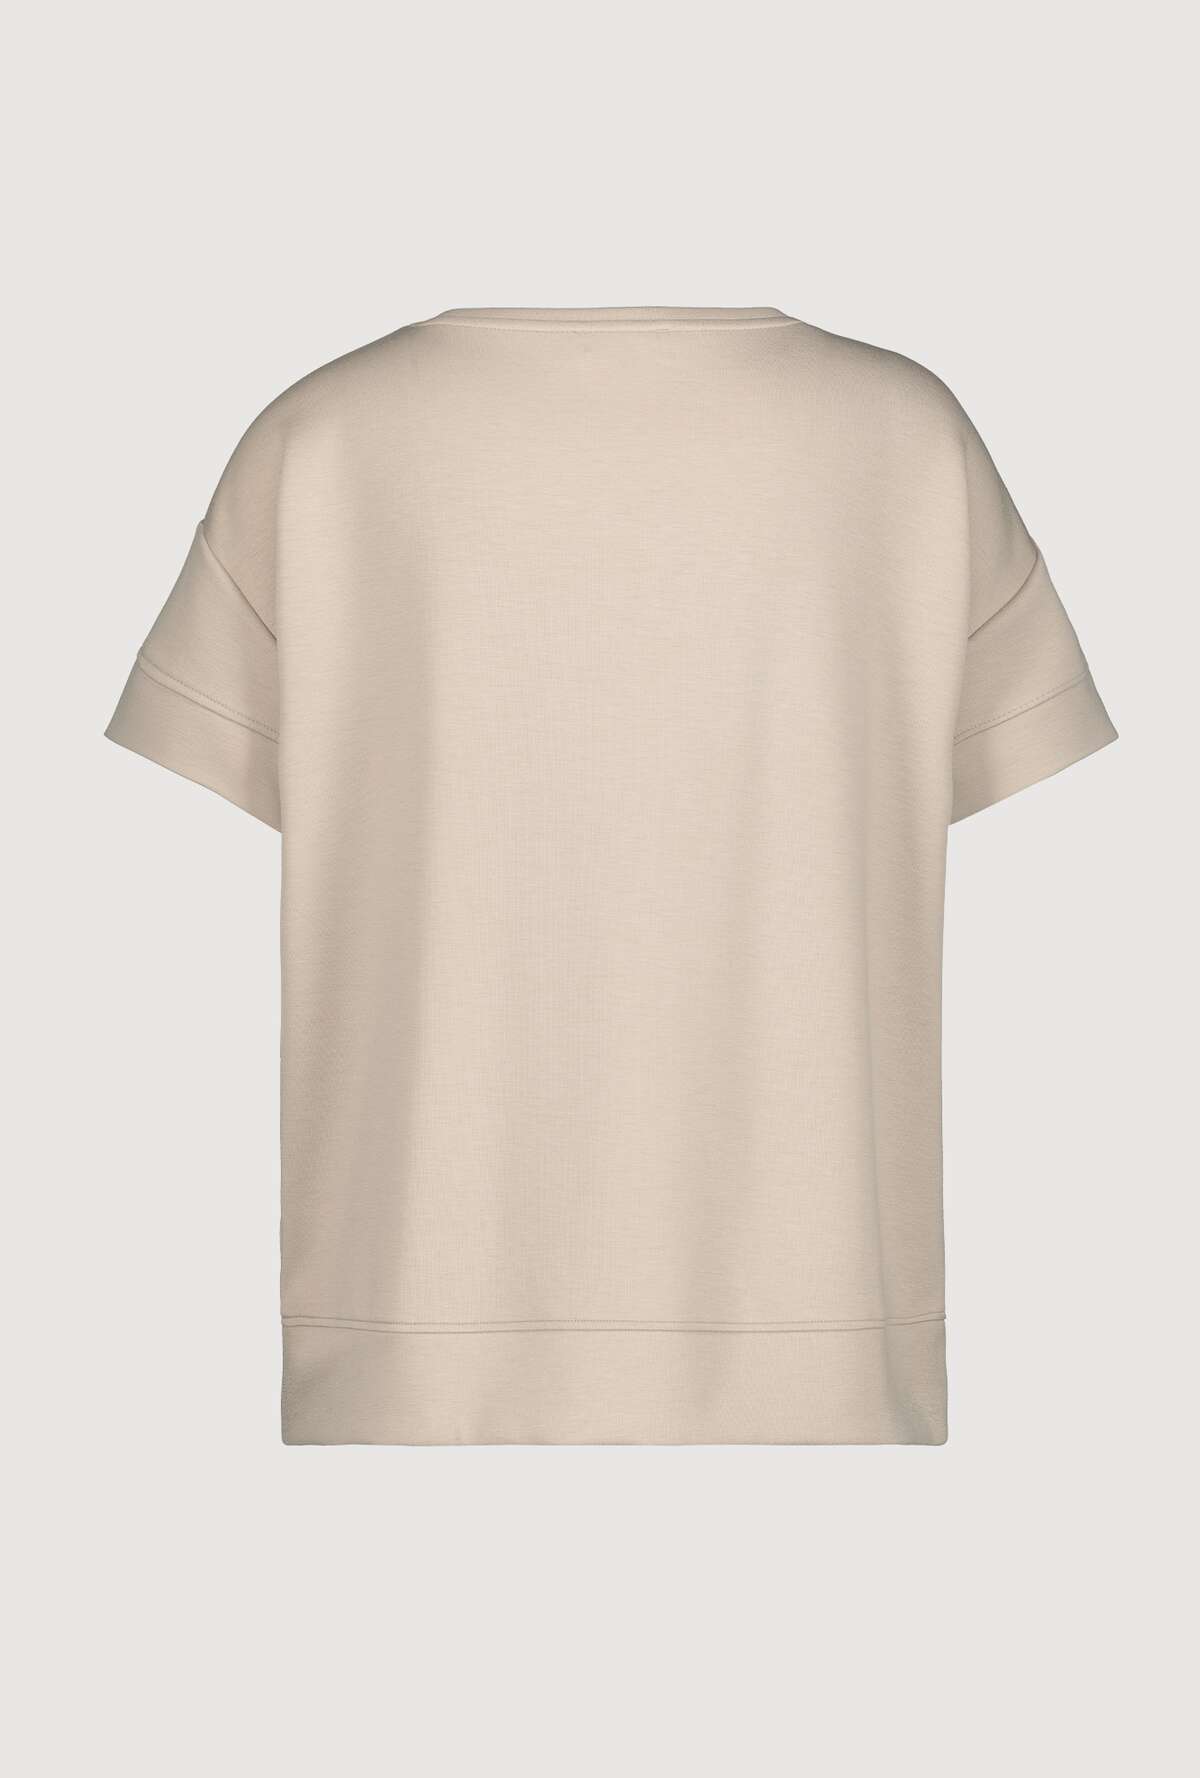 Monari T shirt med pailetter og tryk sand 4